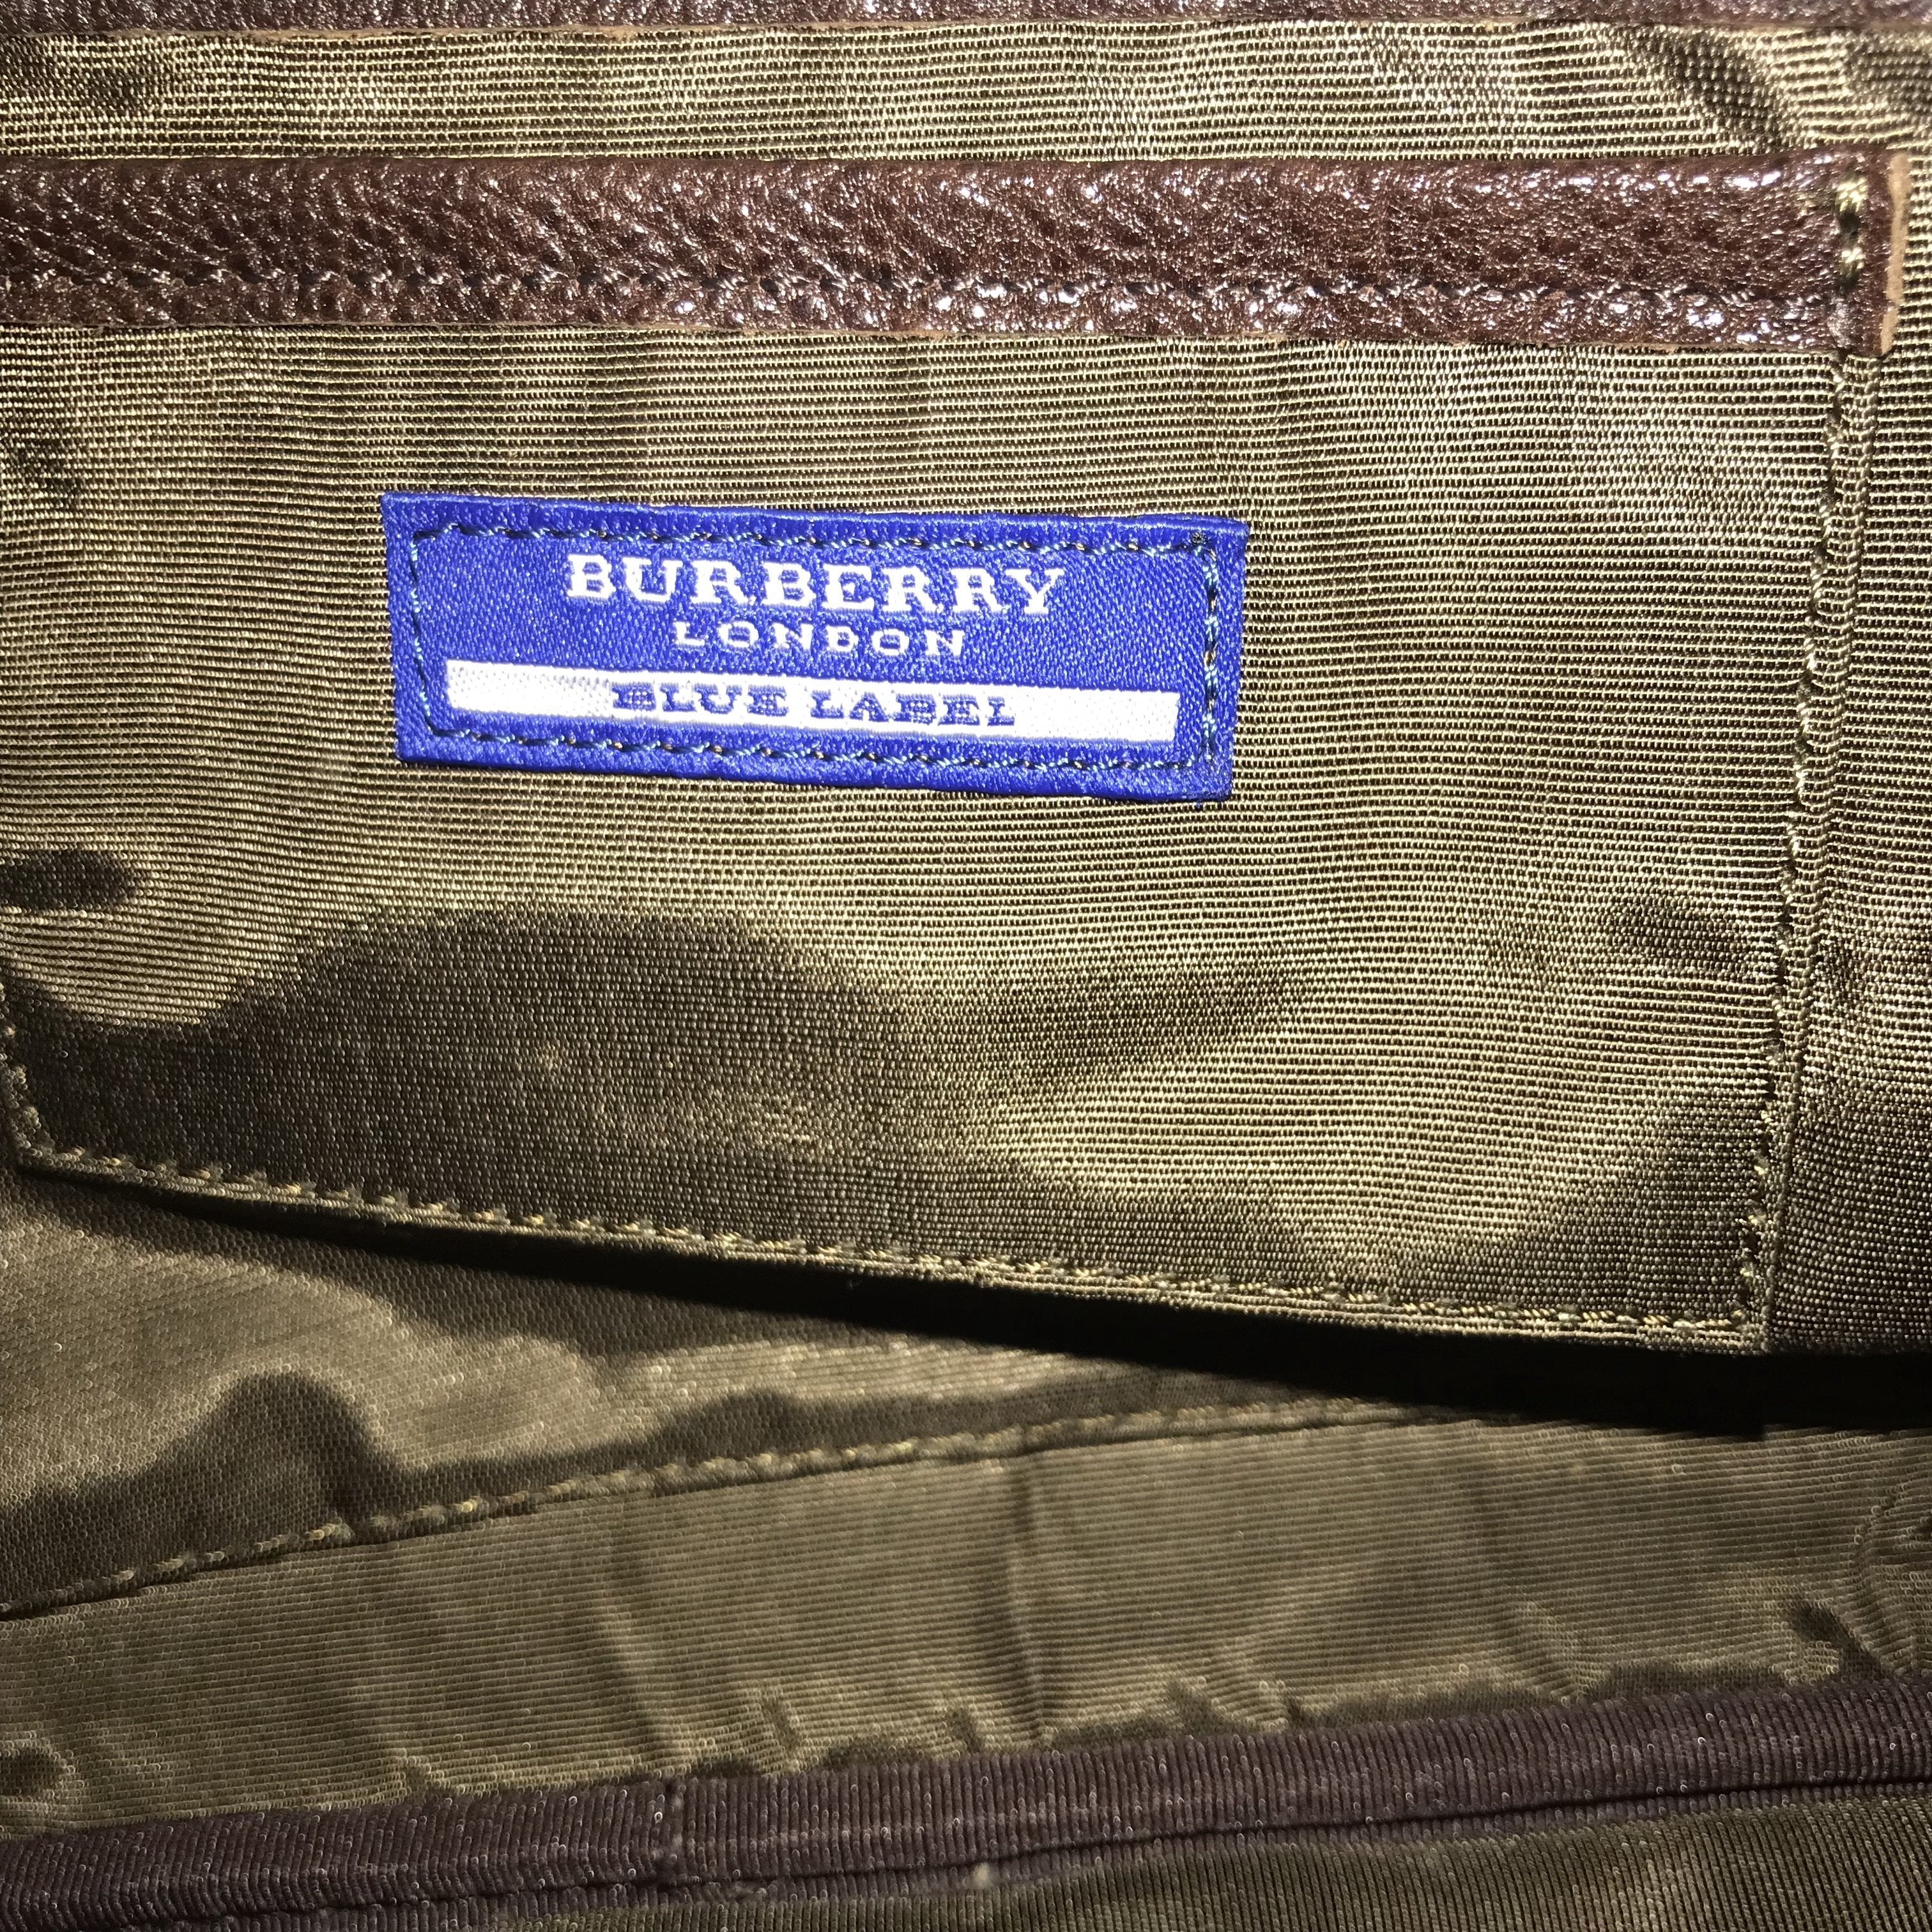 Burberry blue label handbag - Gem